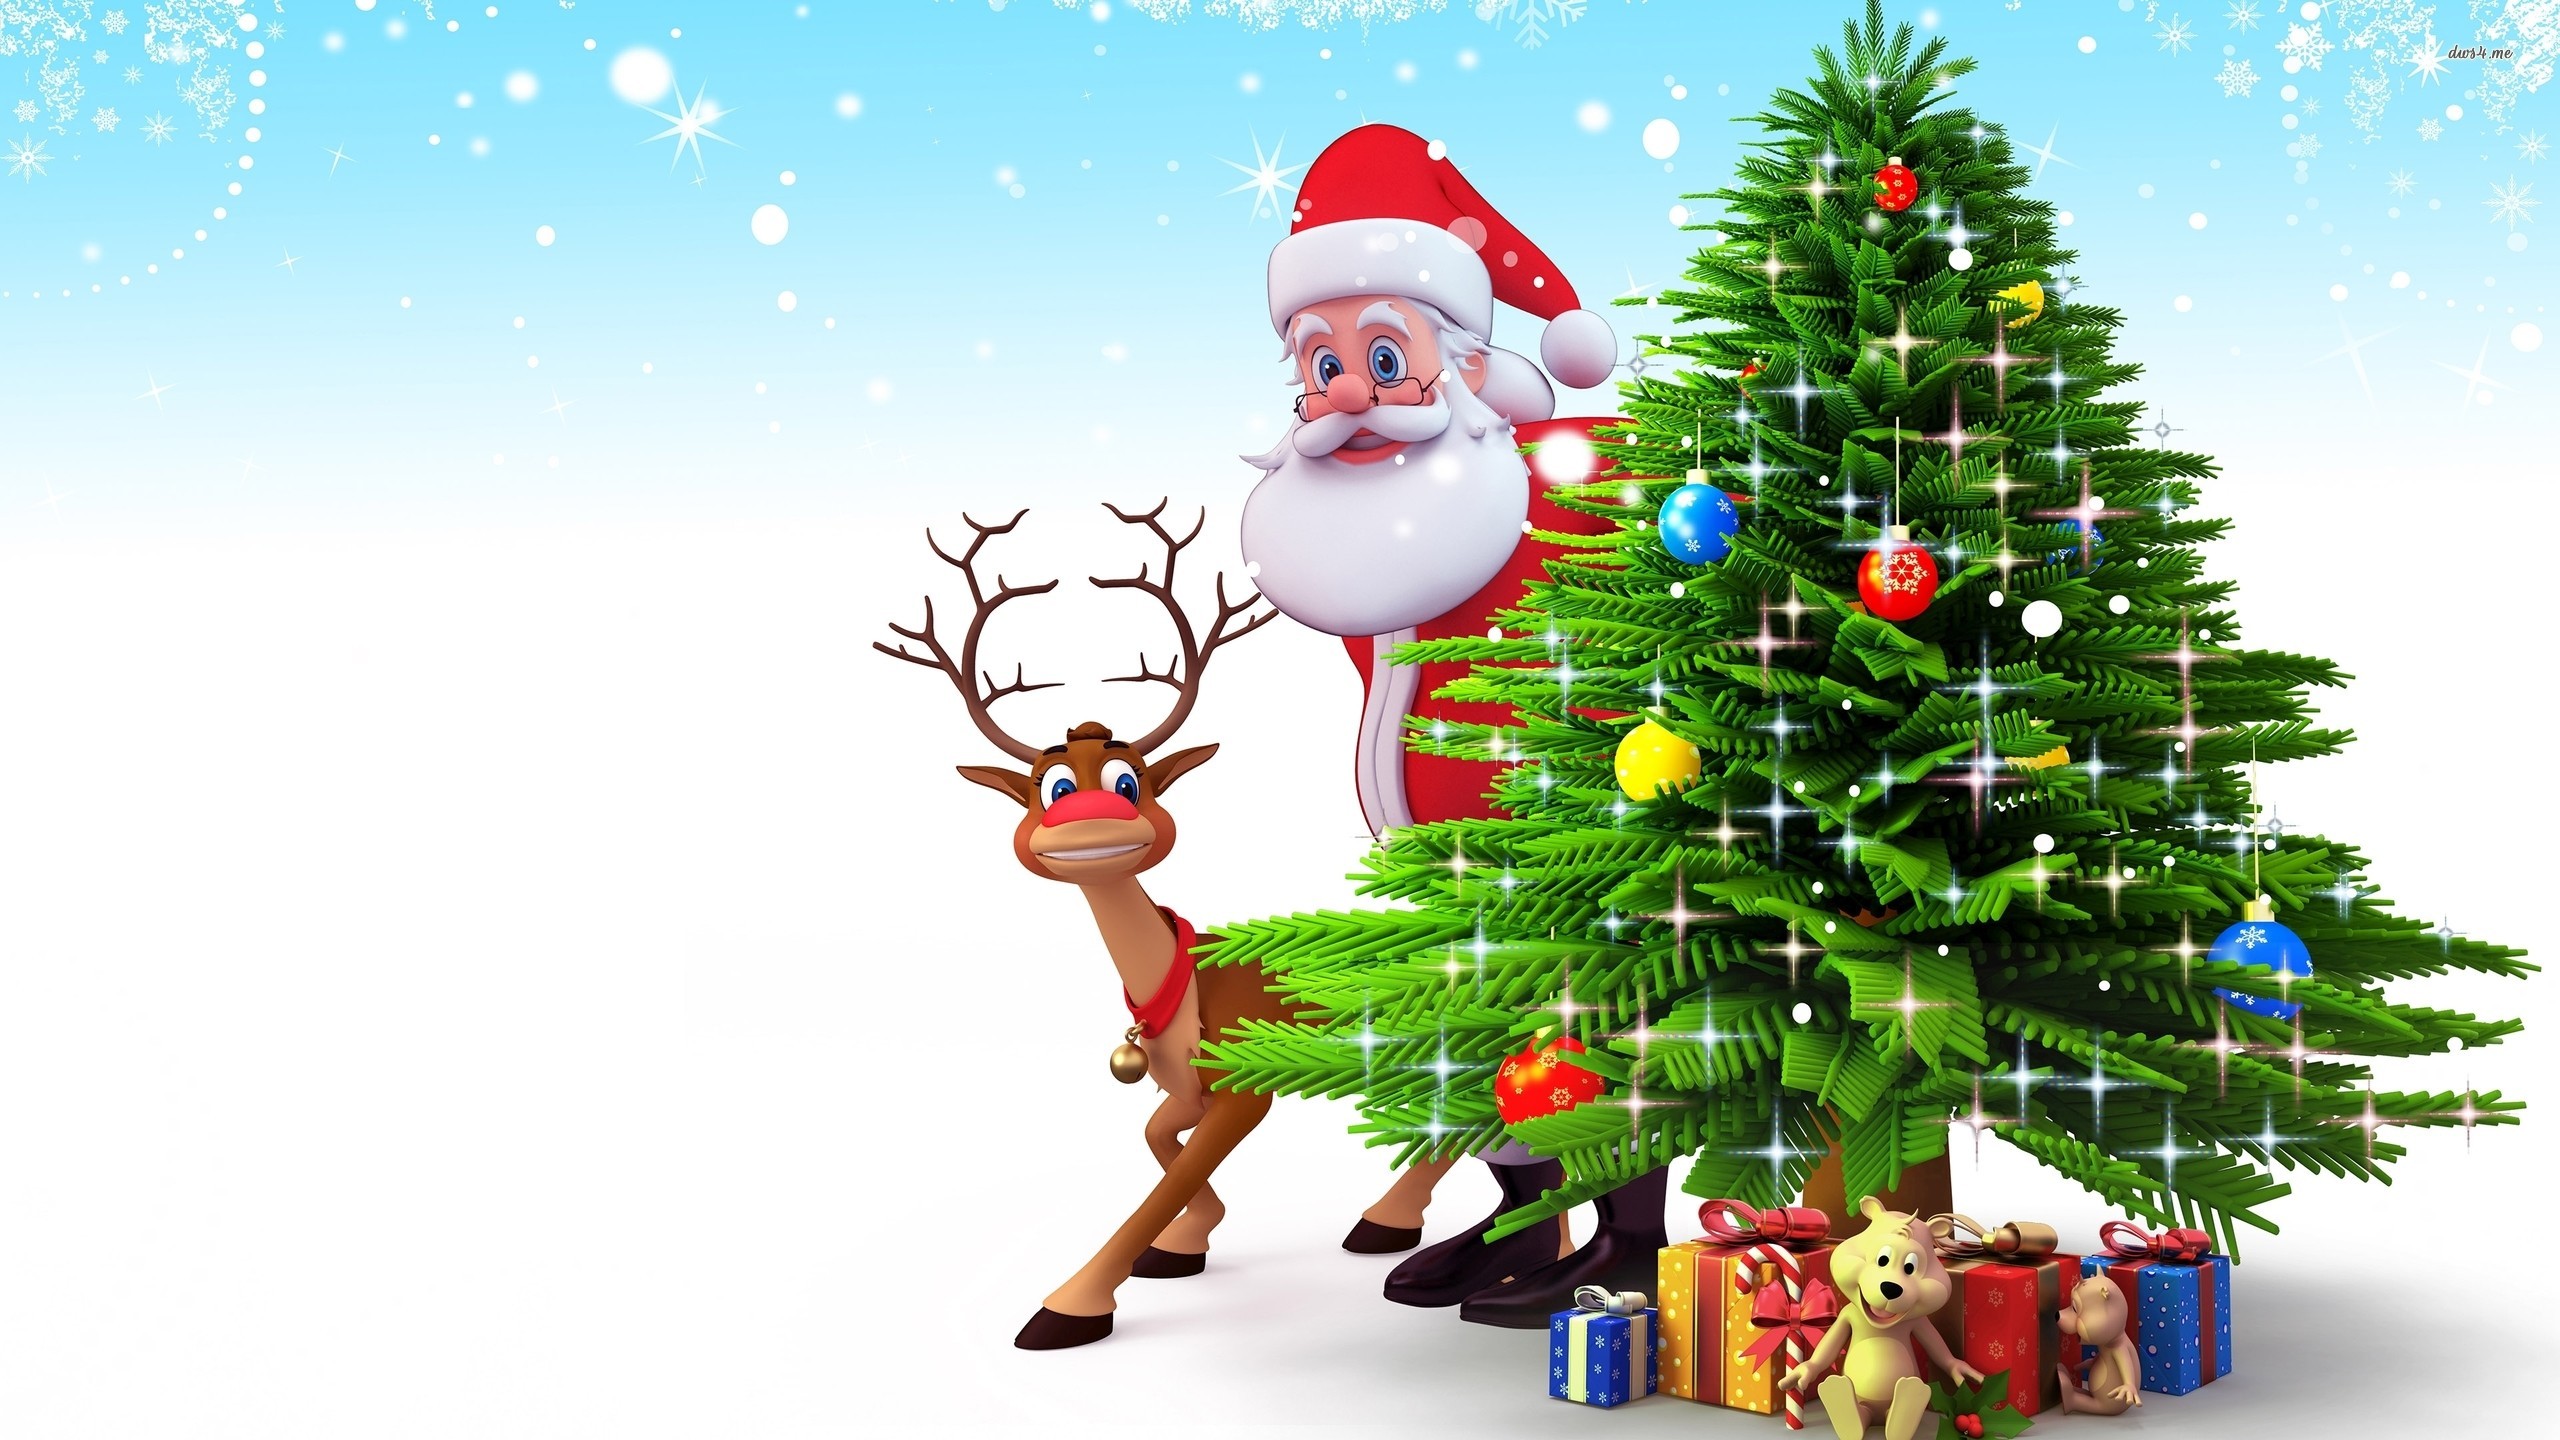 2560x1440 Christmas ~ Christmas Charlie Brown Tree Wallpaper Images .